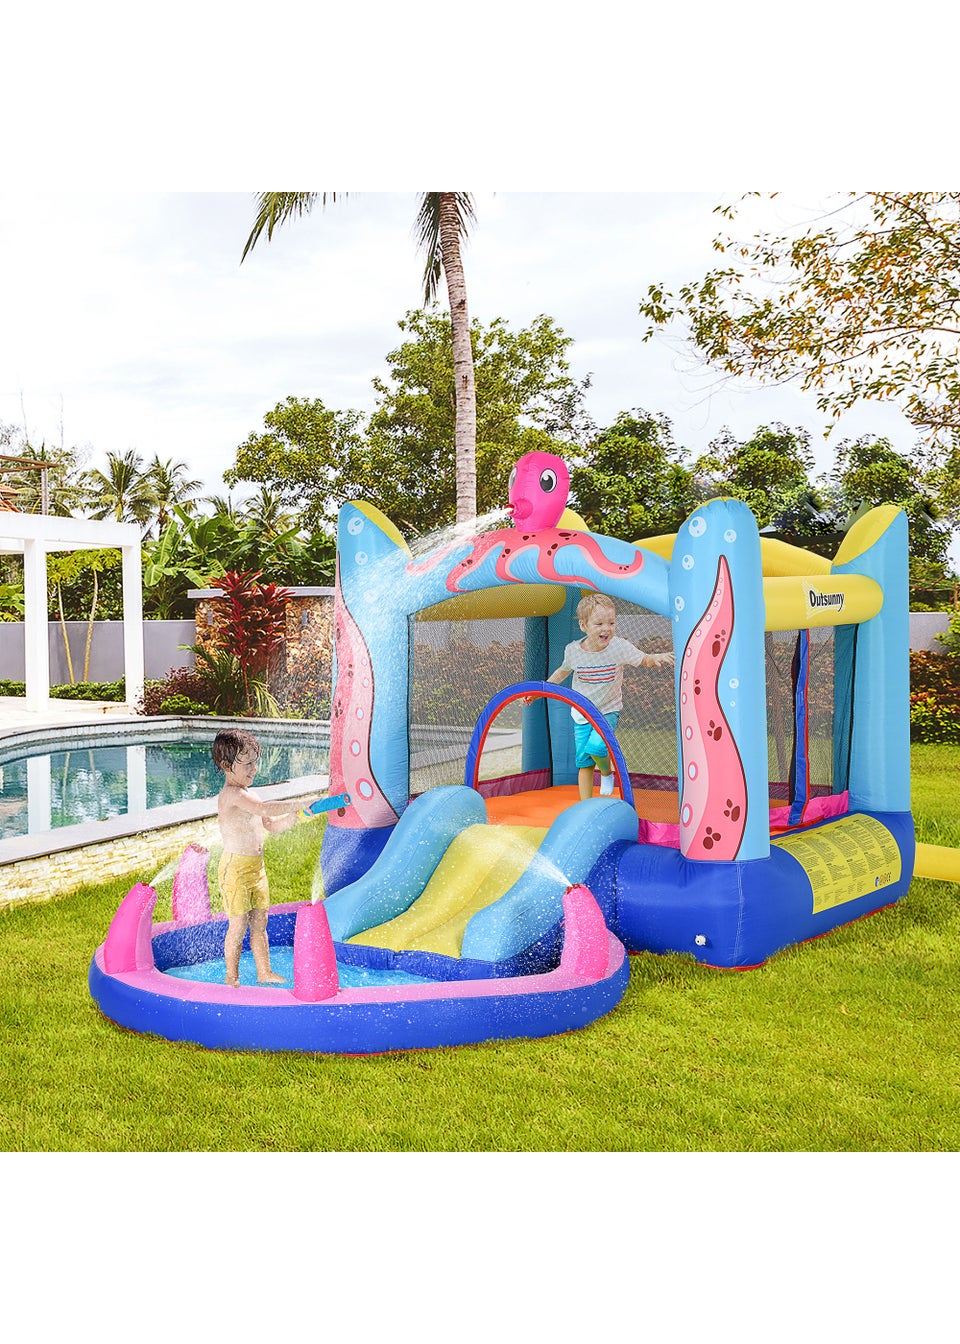 Outsunny Inflatable Octopus Bouncy Castle (180cm x 360cm x 175cm)